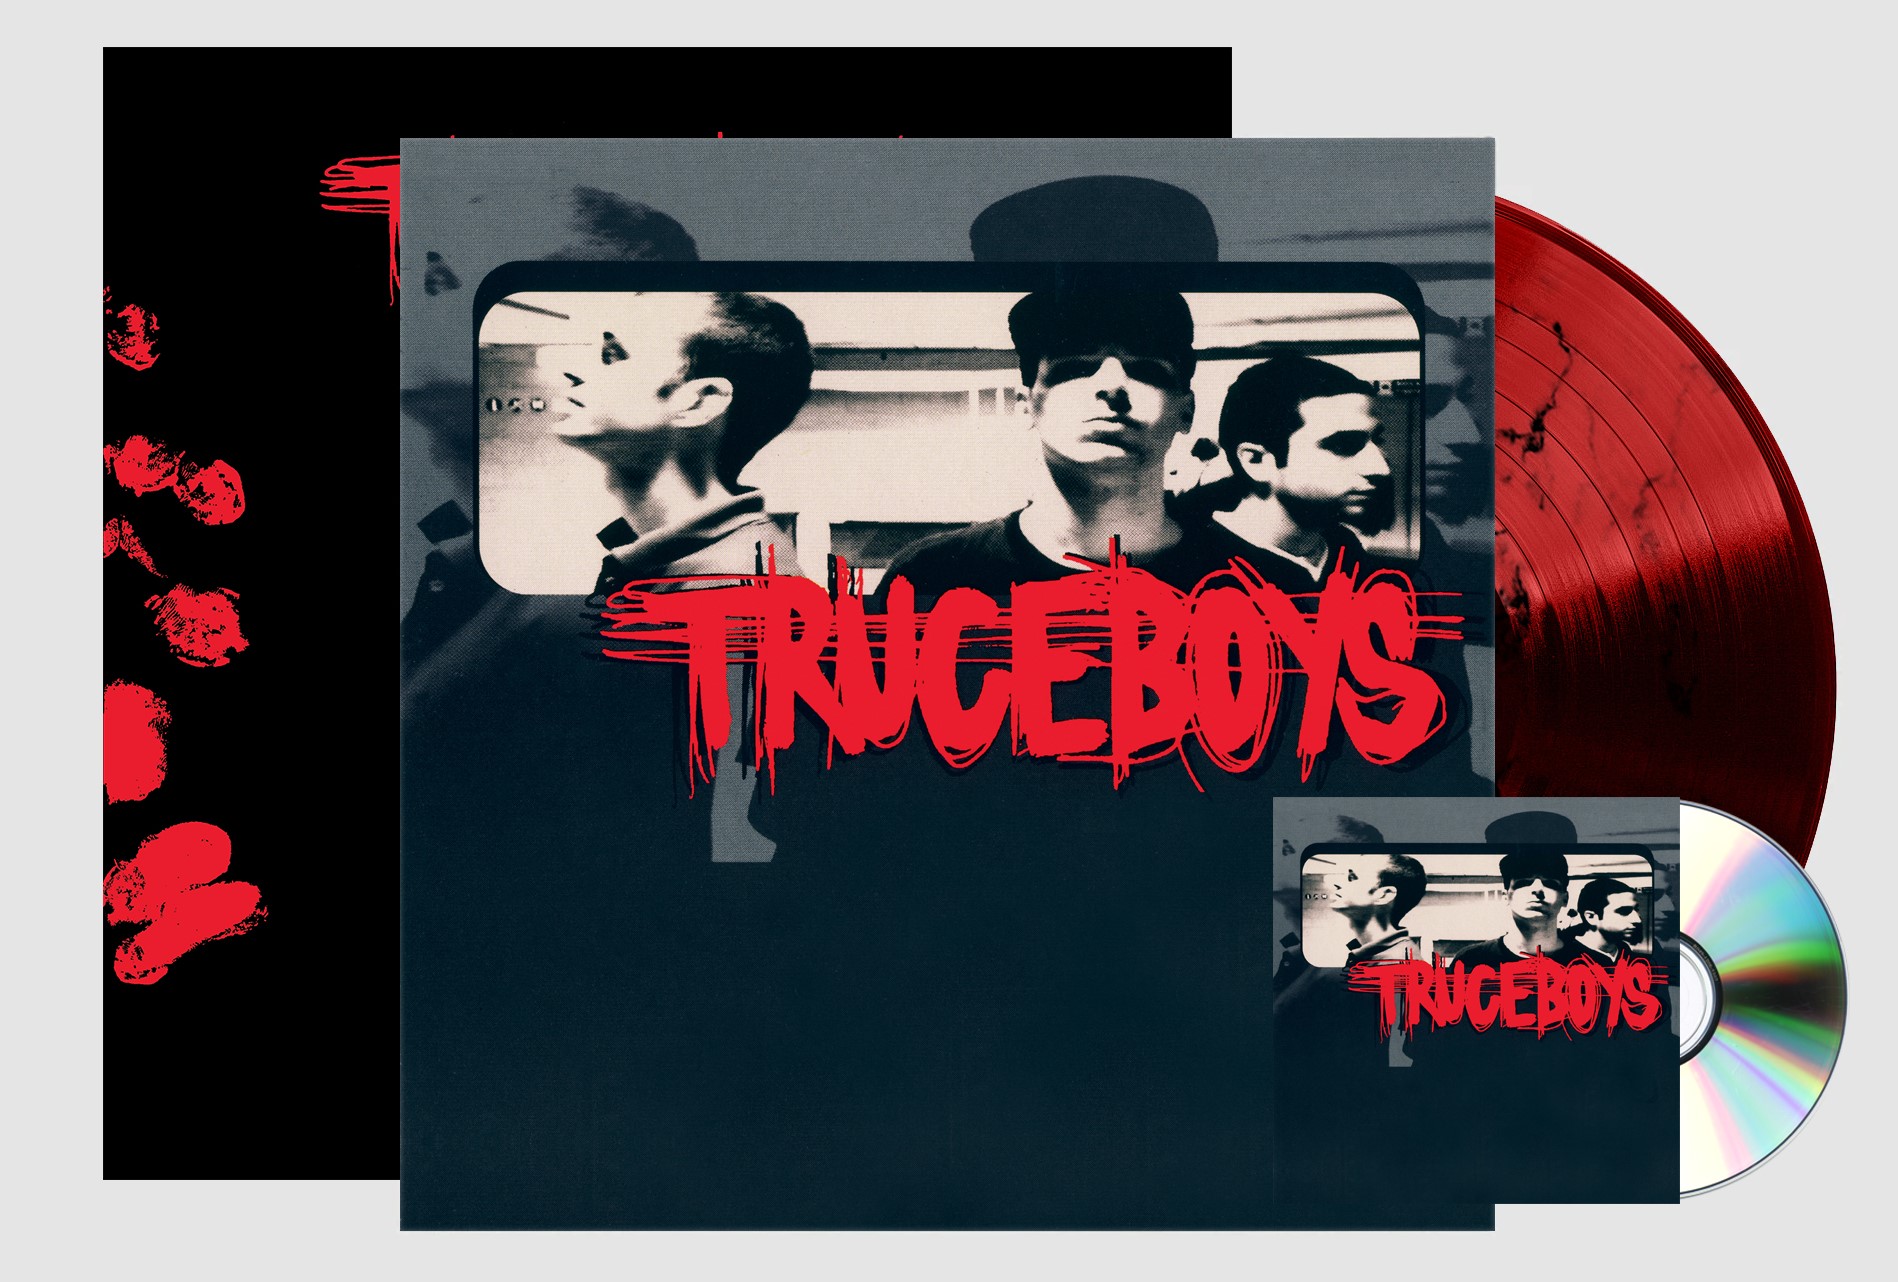 Aldebaran Records, arriva la ristampa in vinile del primo EP dei Truceboys  - Sound Contest